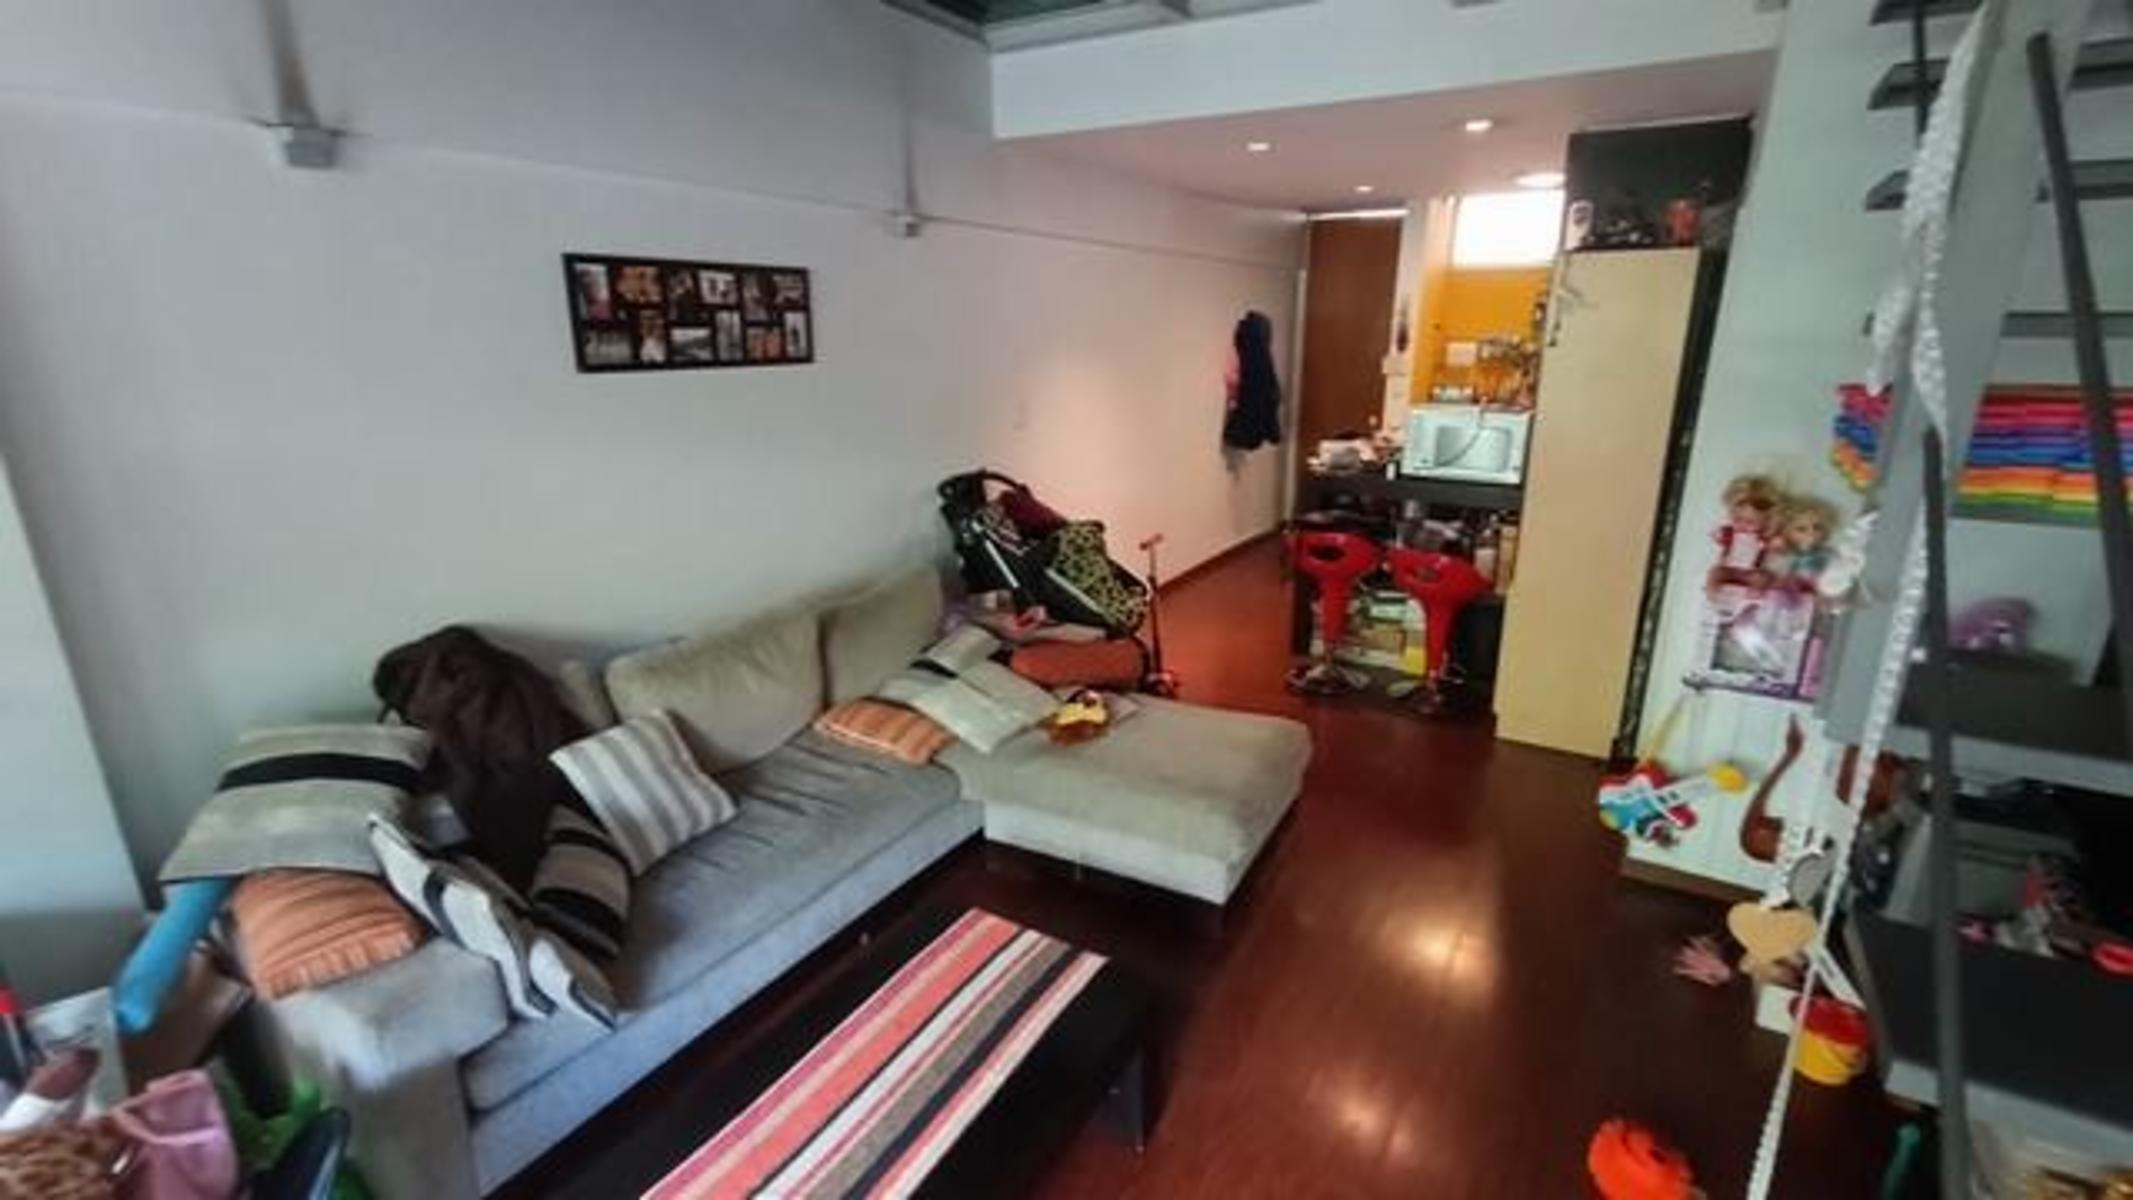 VILLA CRESPO-  Moderno departamento en dúplex: ¡descubrí tu nuevo hogar